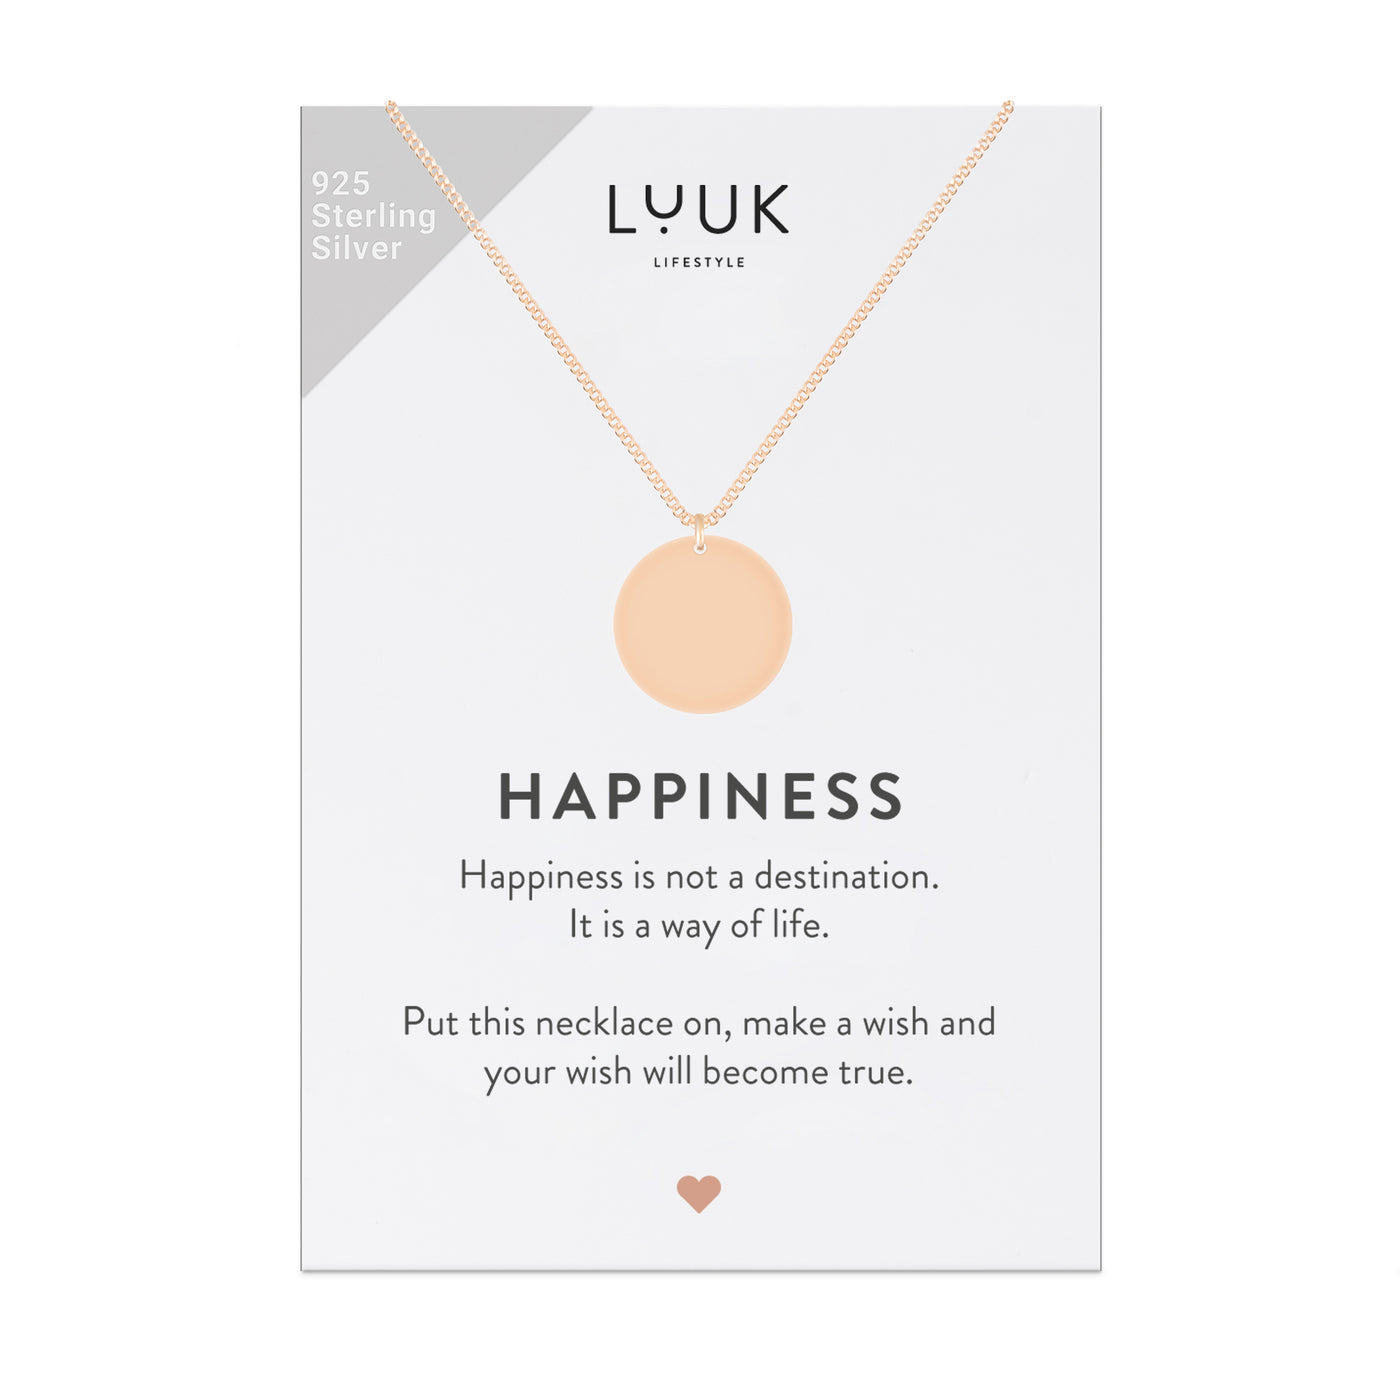 Rose goldene Kette mit rundem Anhänger auf Happiness Spruchkarte von der Marke Luuk Lifestyle 